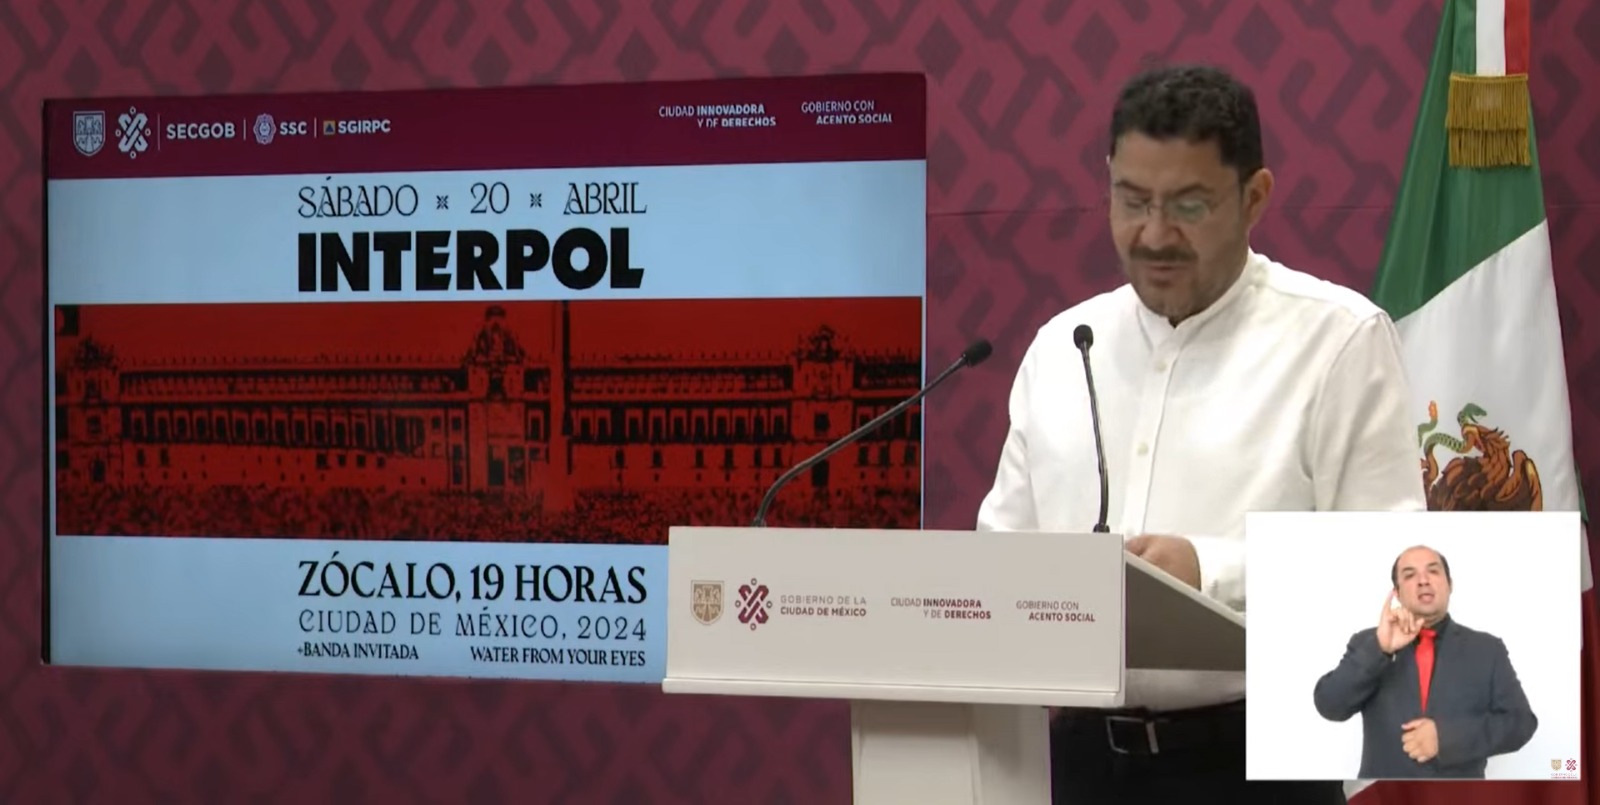 Presenta Gobierno de la Ciudad de México operativo con motivo del concierto de Interpol